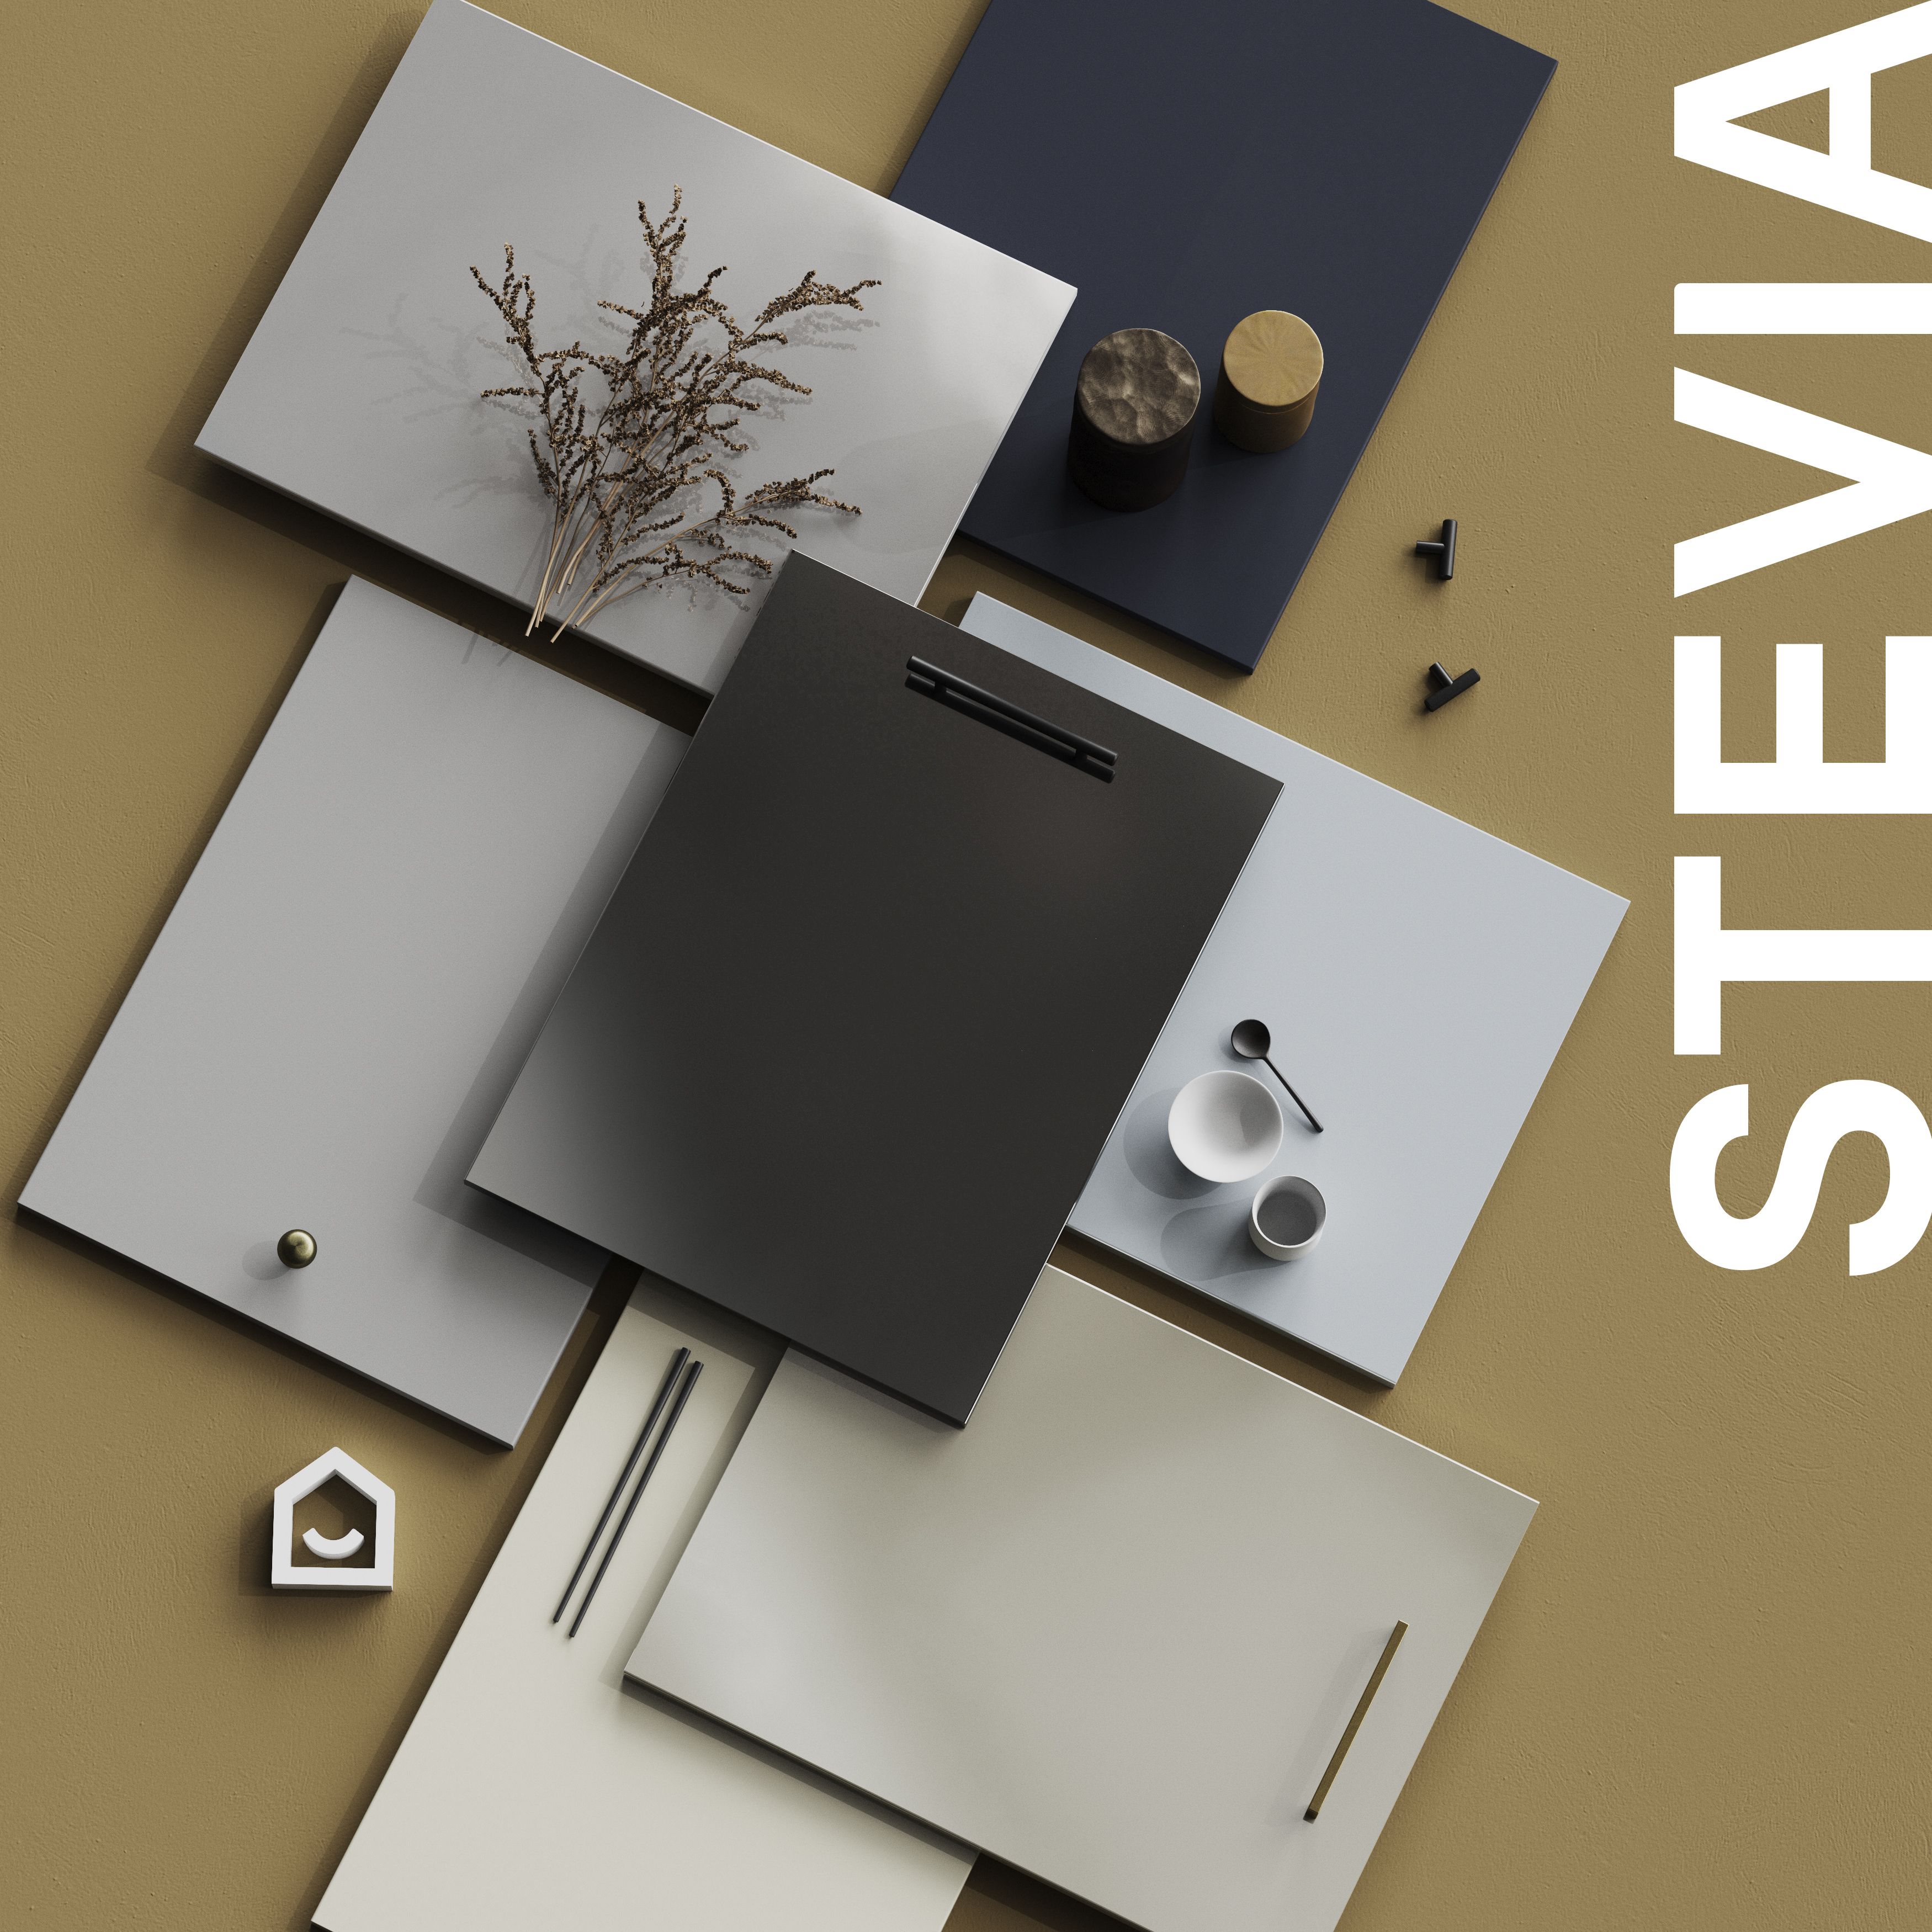 GoodHome Stevia Gloss grey slab Larder Cabinet door (W)300mm (H)1287mm (T)18mm